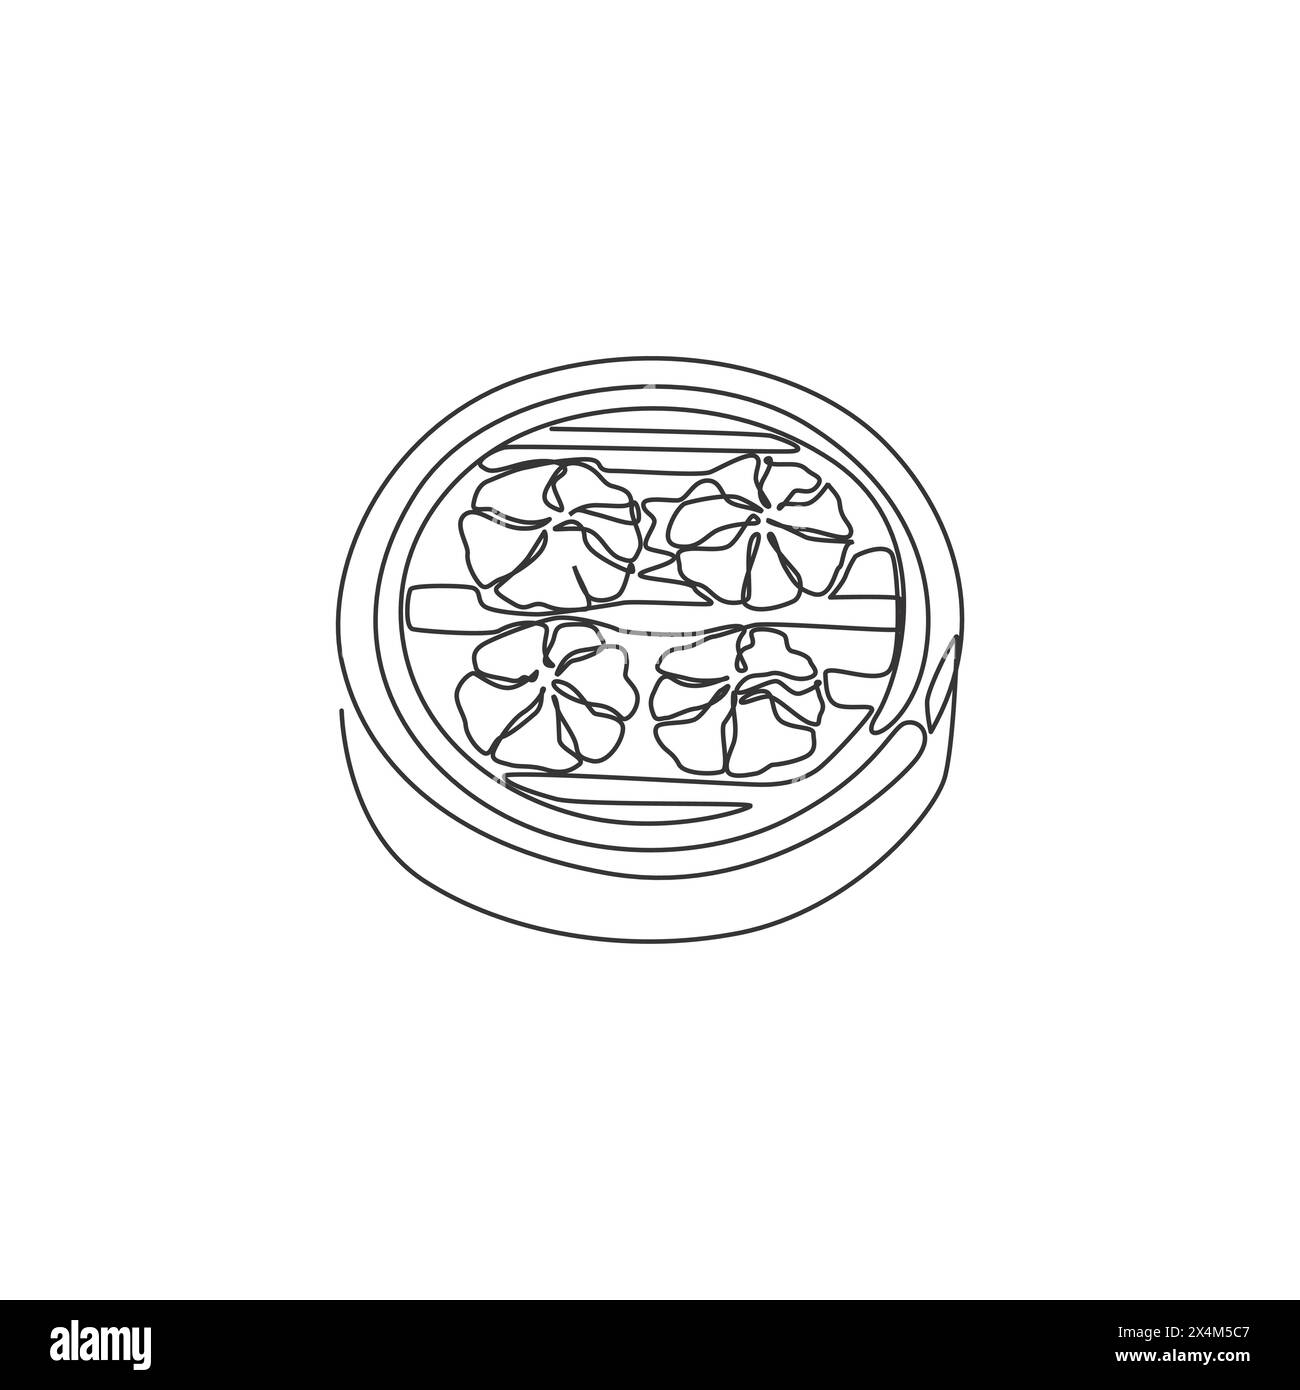 Eine einzelne Linie Zeichnung der frischen chinesischen Knödel Logo Grafik Vektor Illustration. Asiatisches Mantou-Essen, Café-Menü und Restaurant-Badge-Konzept. Modern c Stock Vektor